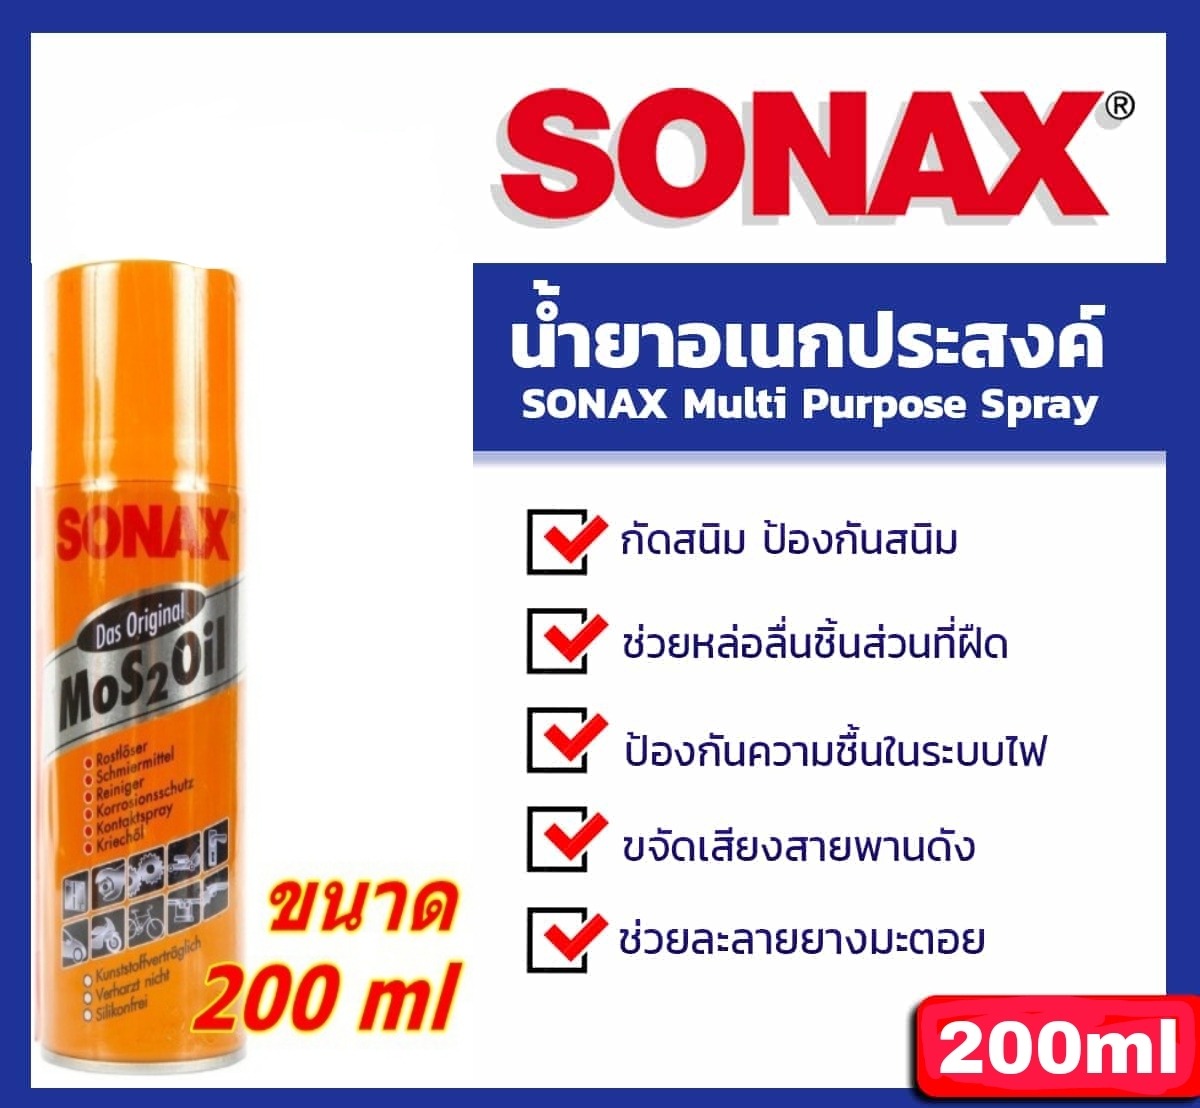 SONAX น้ำยาครอบจักรวาล 200ml น้ำมันสูตรพิเศษที่มีคุณสมบัติครบถ้วนในกระป๋องเดียว